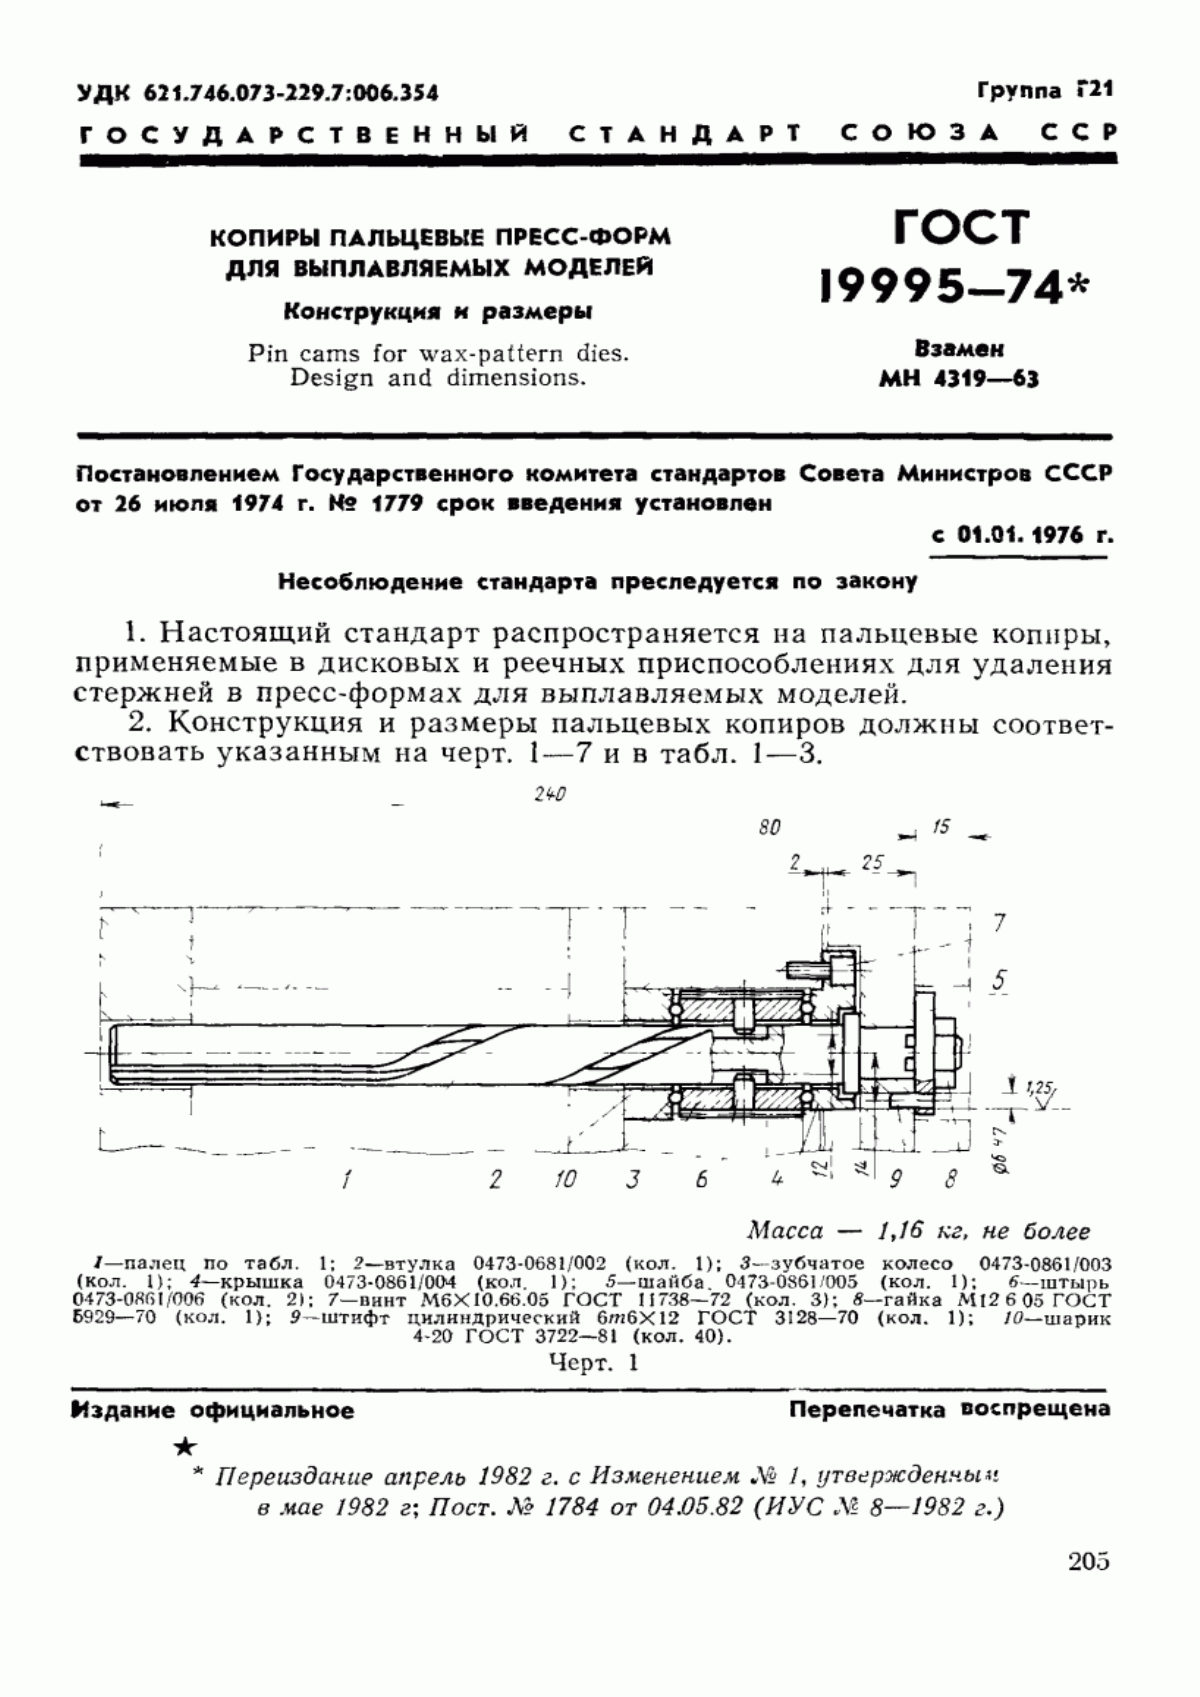 ГОСТ 19995-74 Копиры пальцевые пресс-форм для выплавляемых моделей. Конструкция и размеры